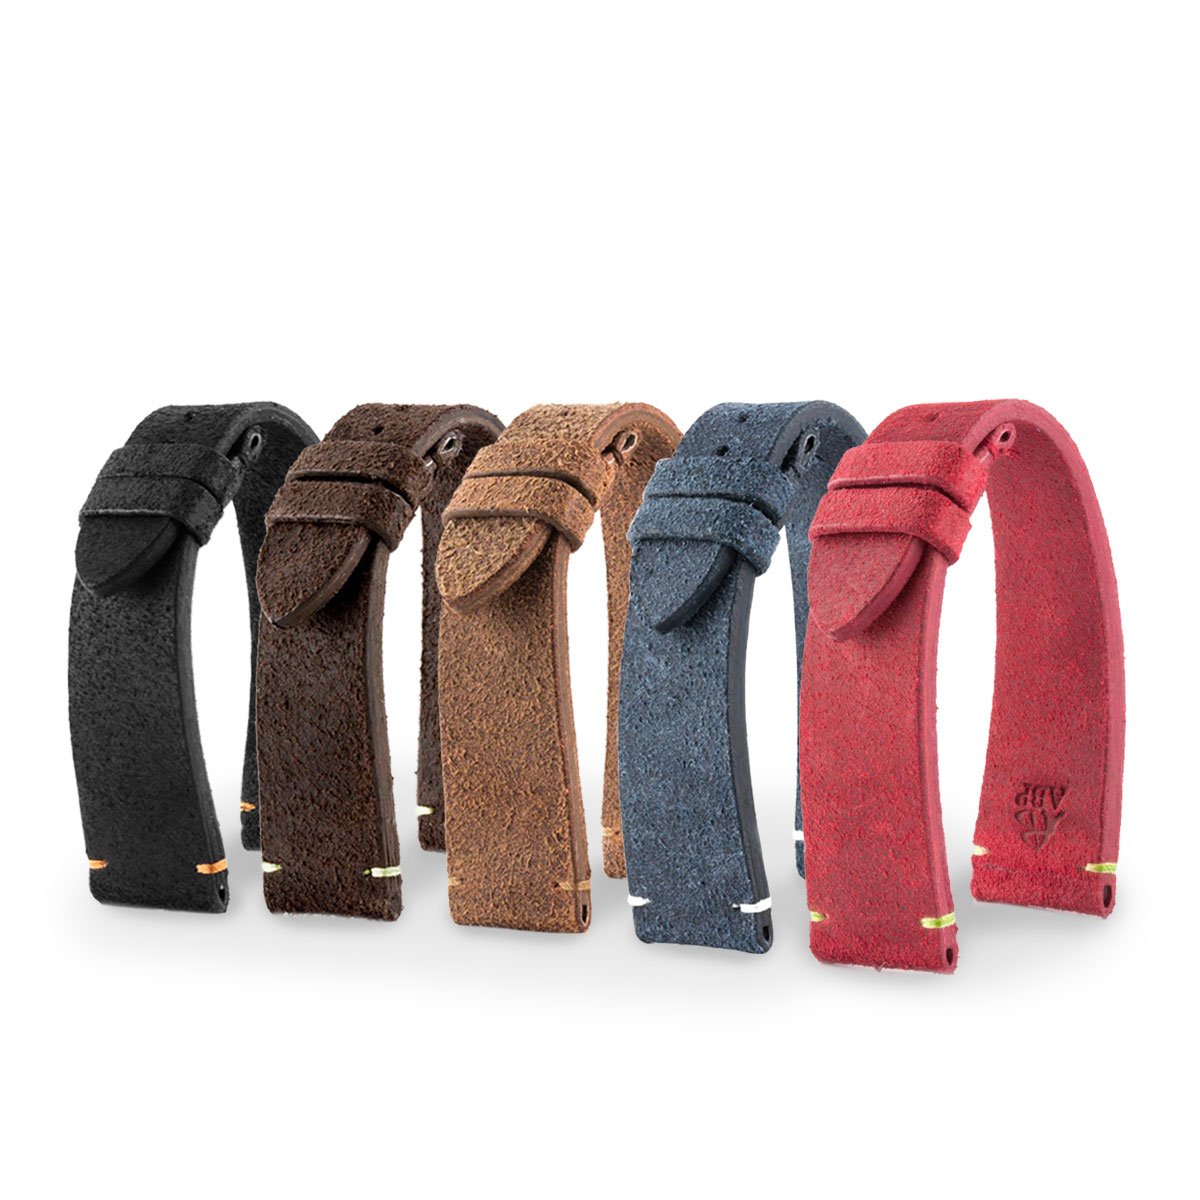 Tudor Black Bay Heritage - Bracelet-montre cuir - Veau brossé (noir, marron, bleu, rouge) - watch band leather strap - ABP Concept -